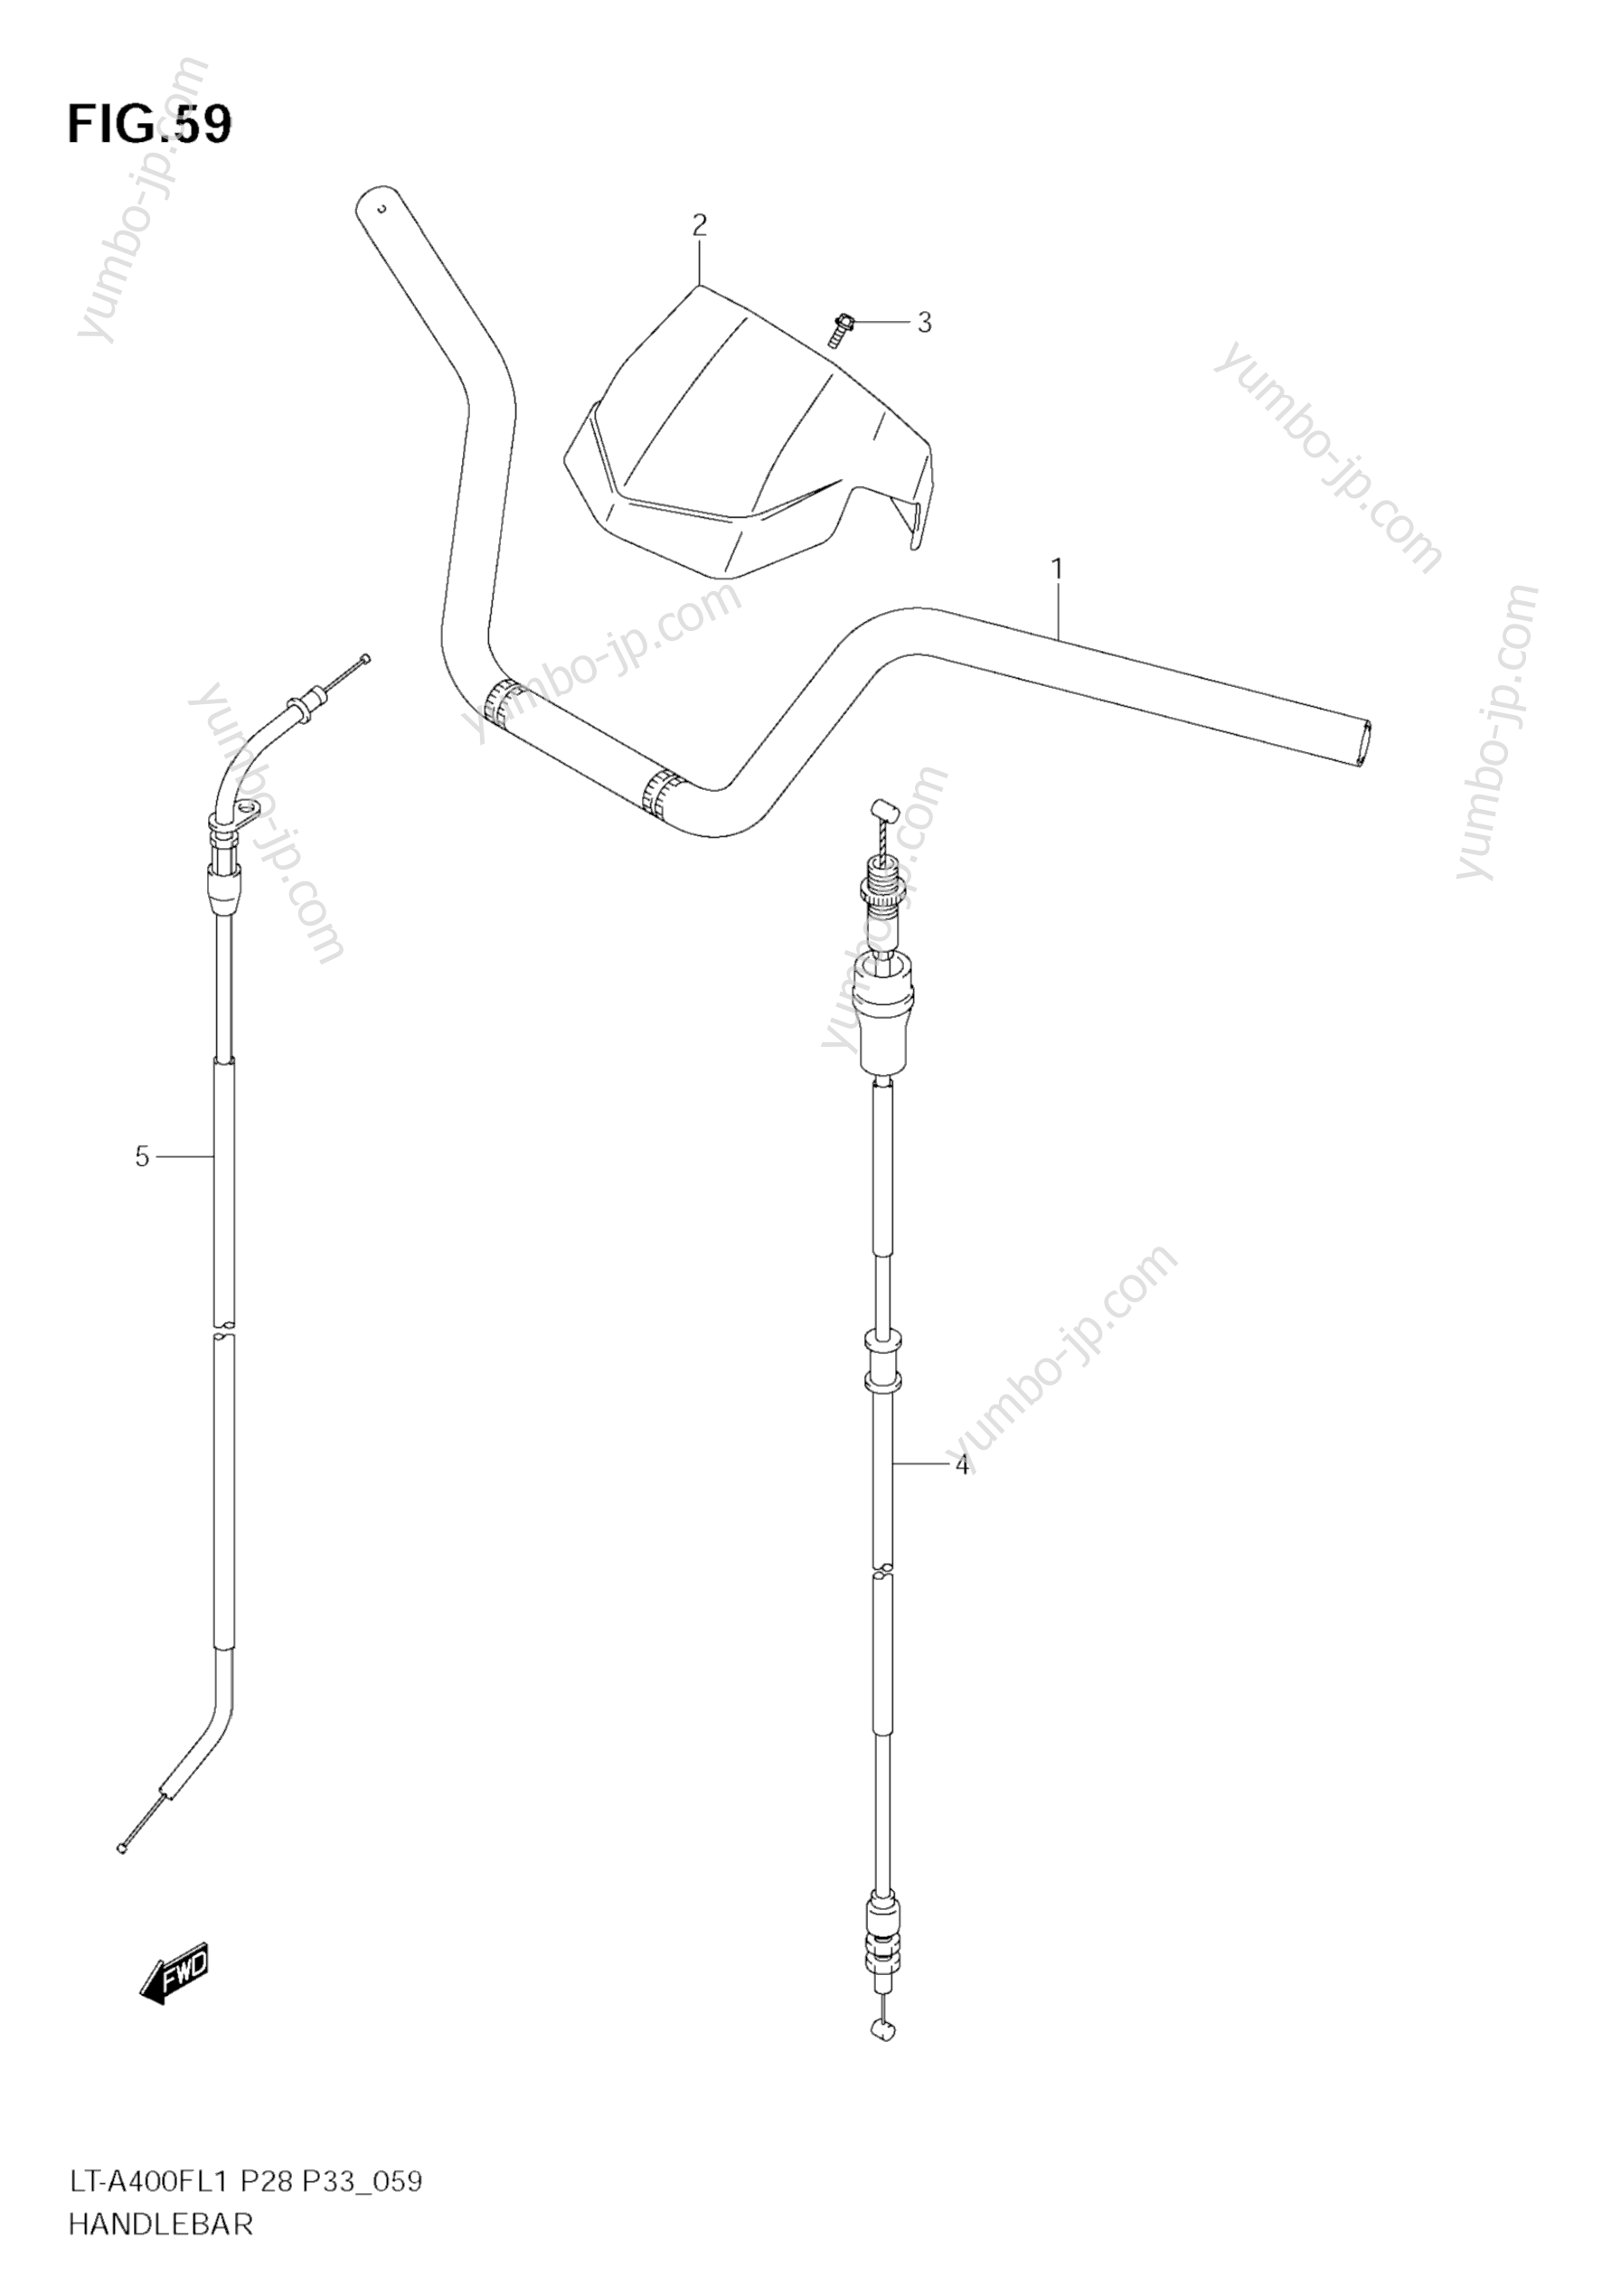 Румпель (рукоятка управления) для квадроциклов SUZUKI KingQuad (LT-A400F) 2011 г.